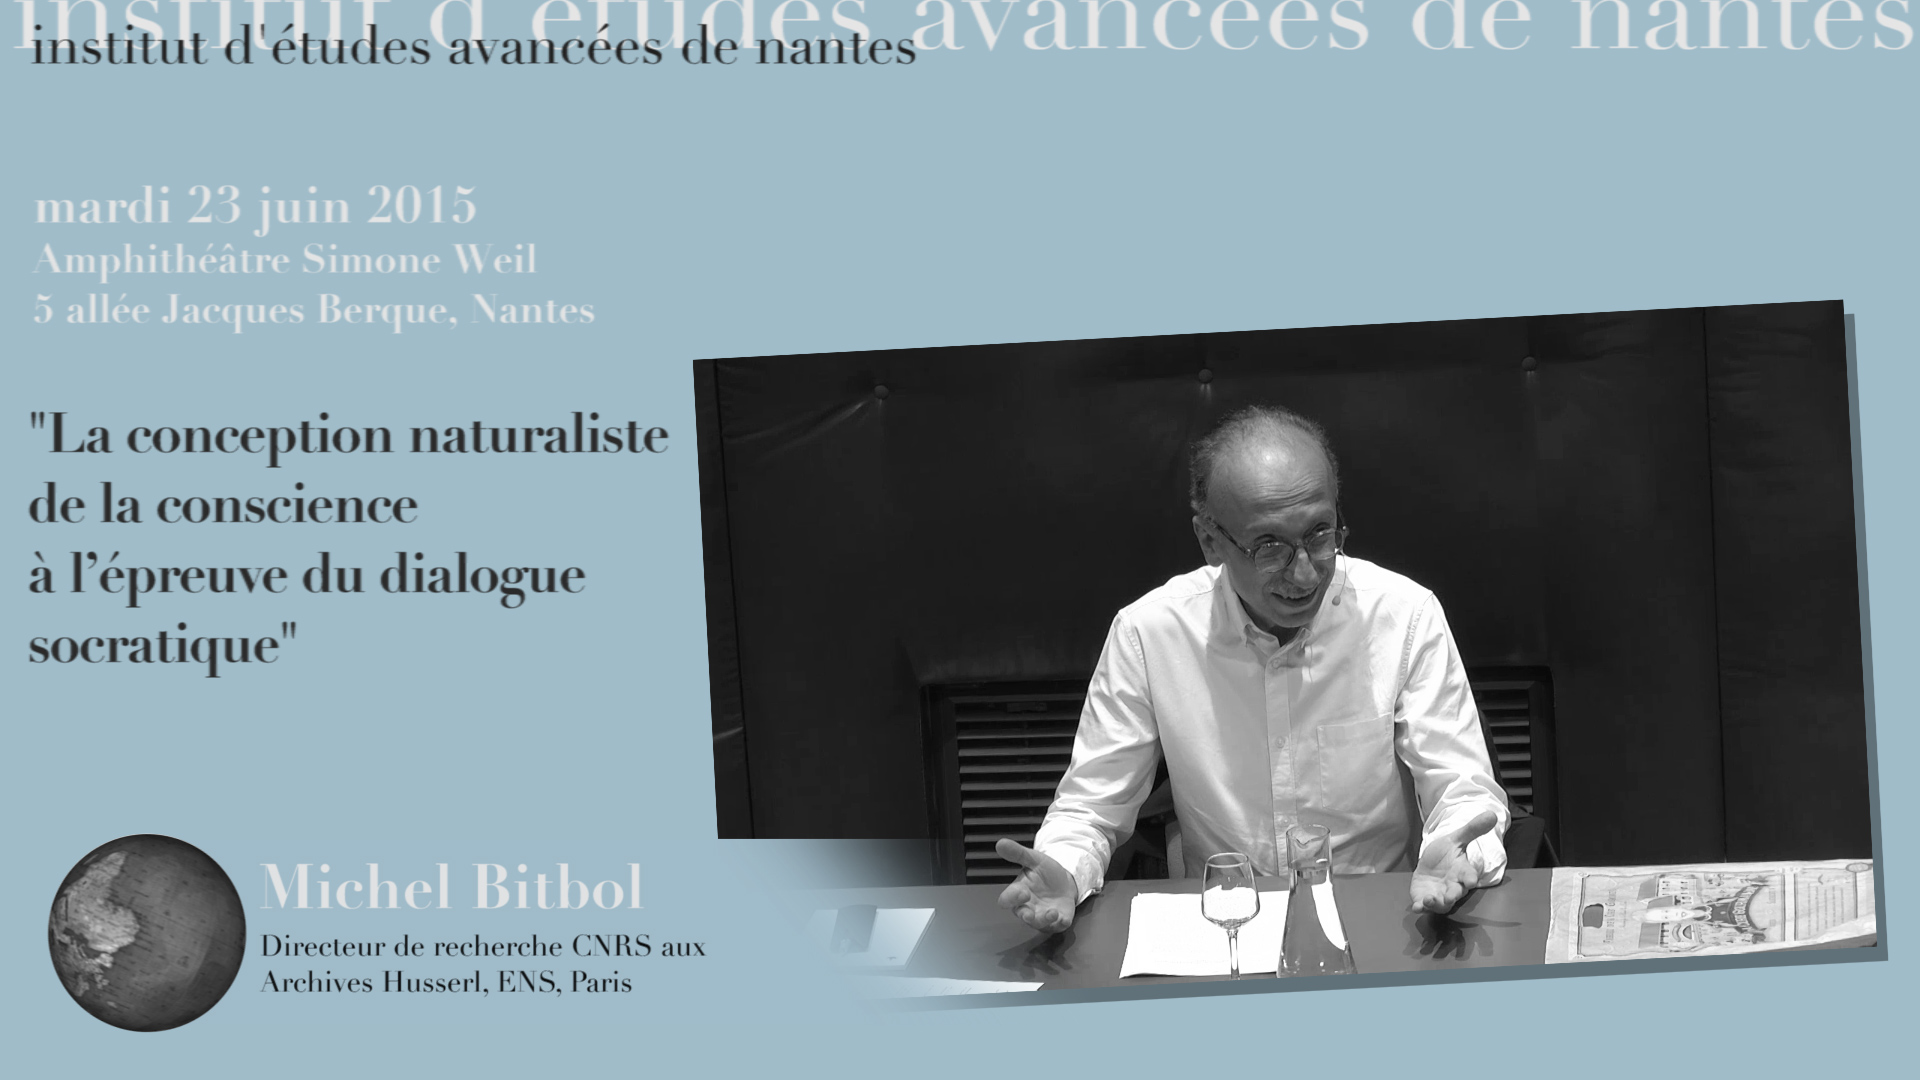 Michel Bitbol : "La conception naturaliste de la conscience à l’épreuve du dialogue socratique"